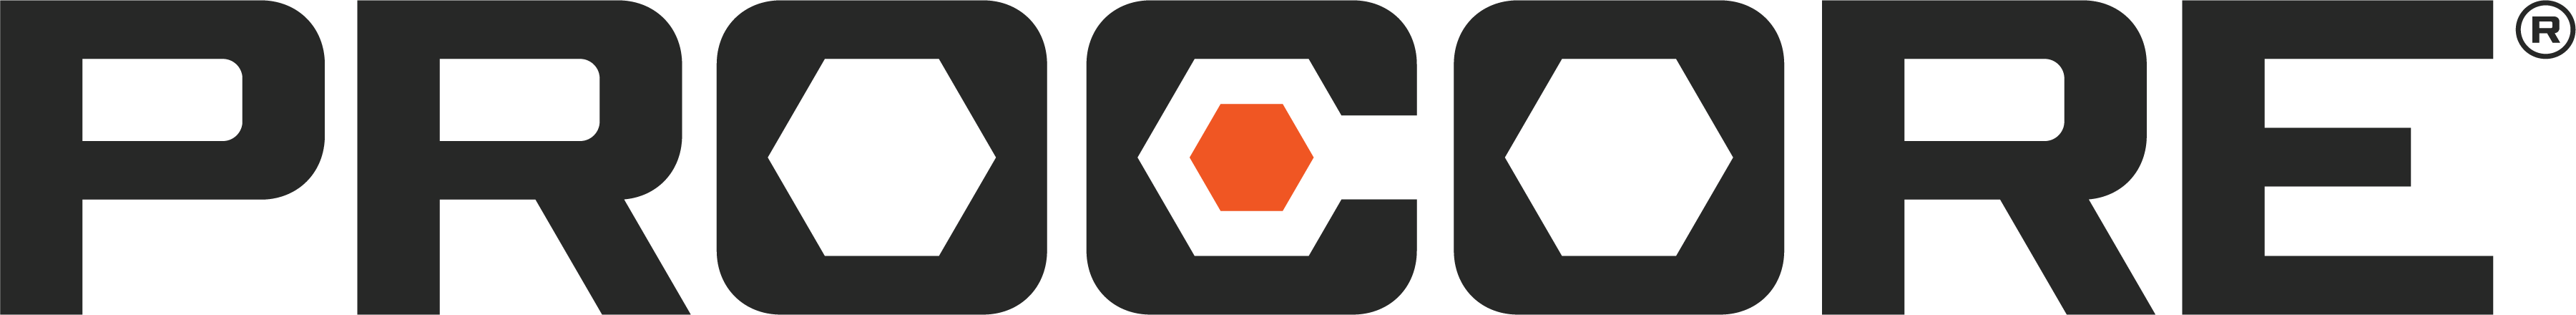 Procore_Logo